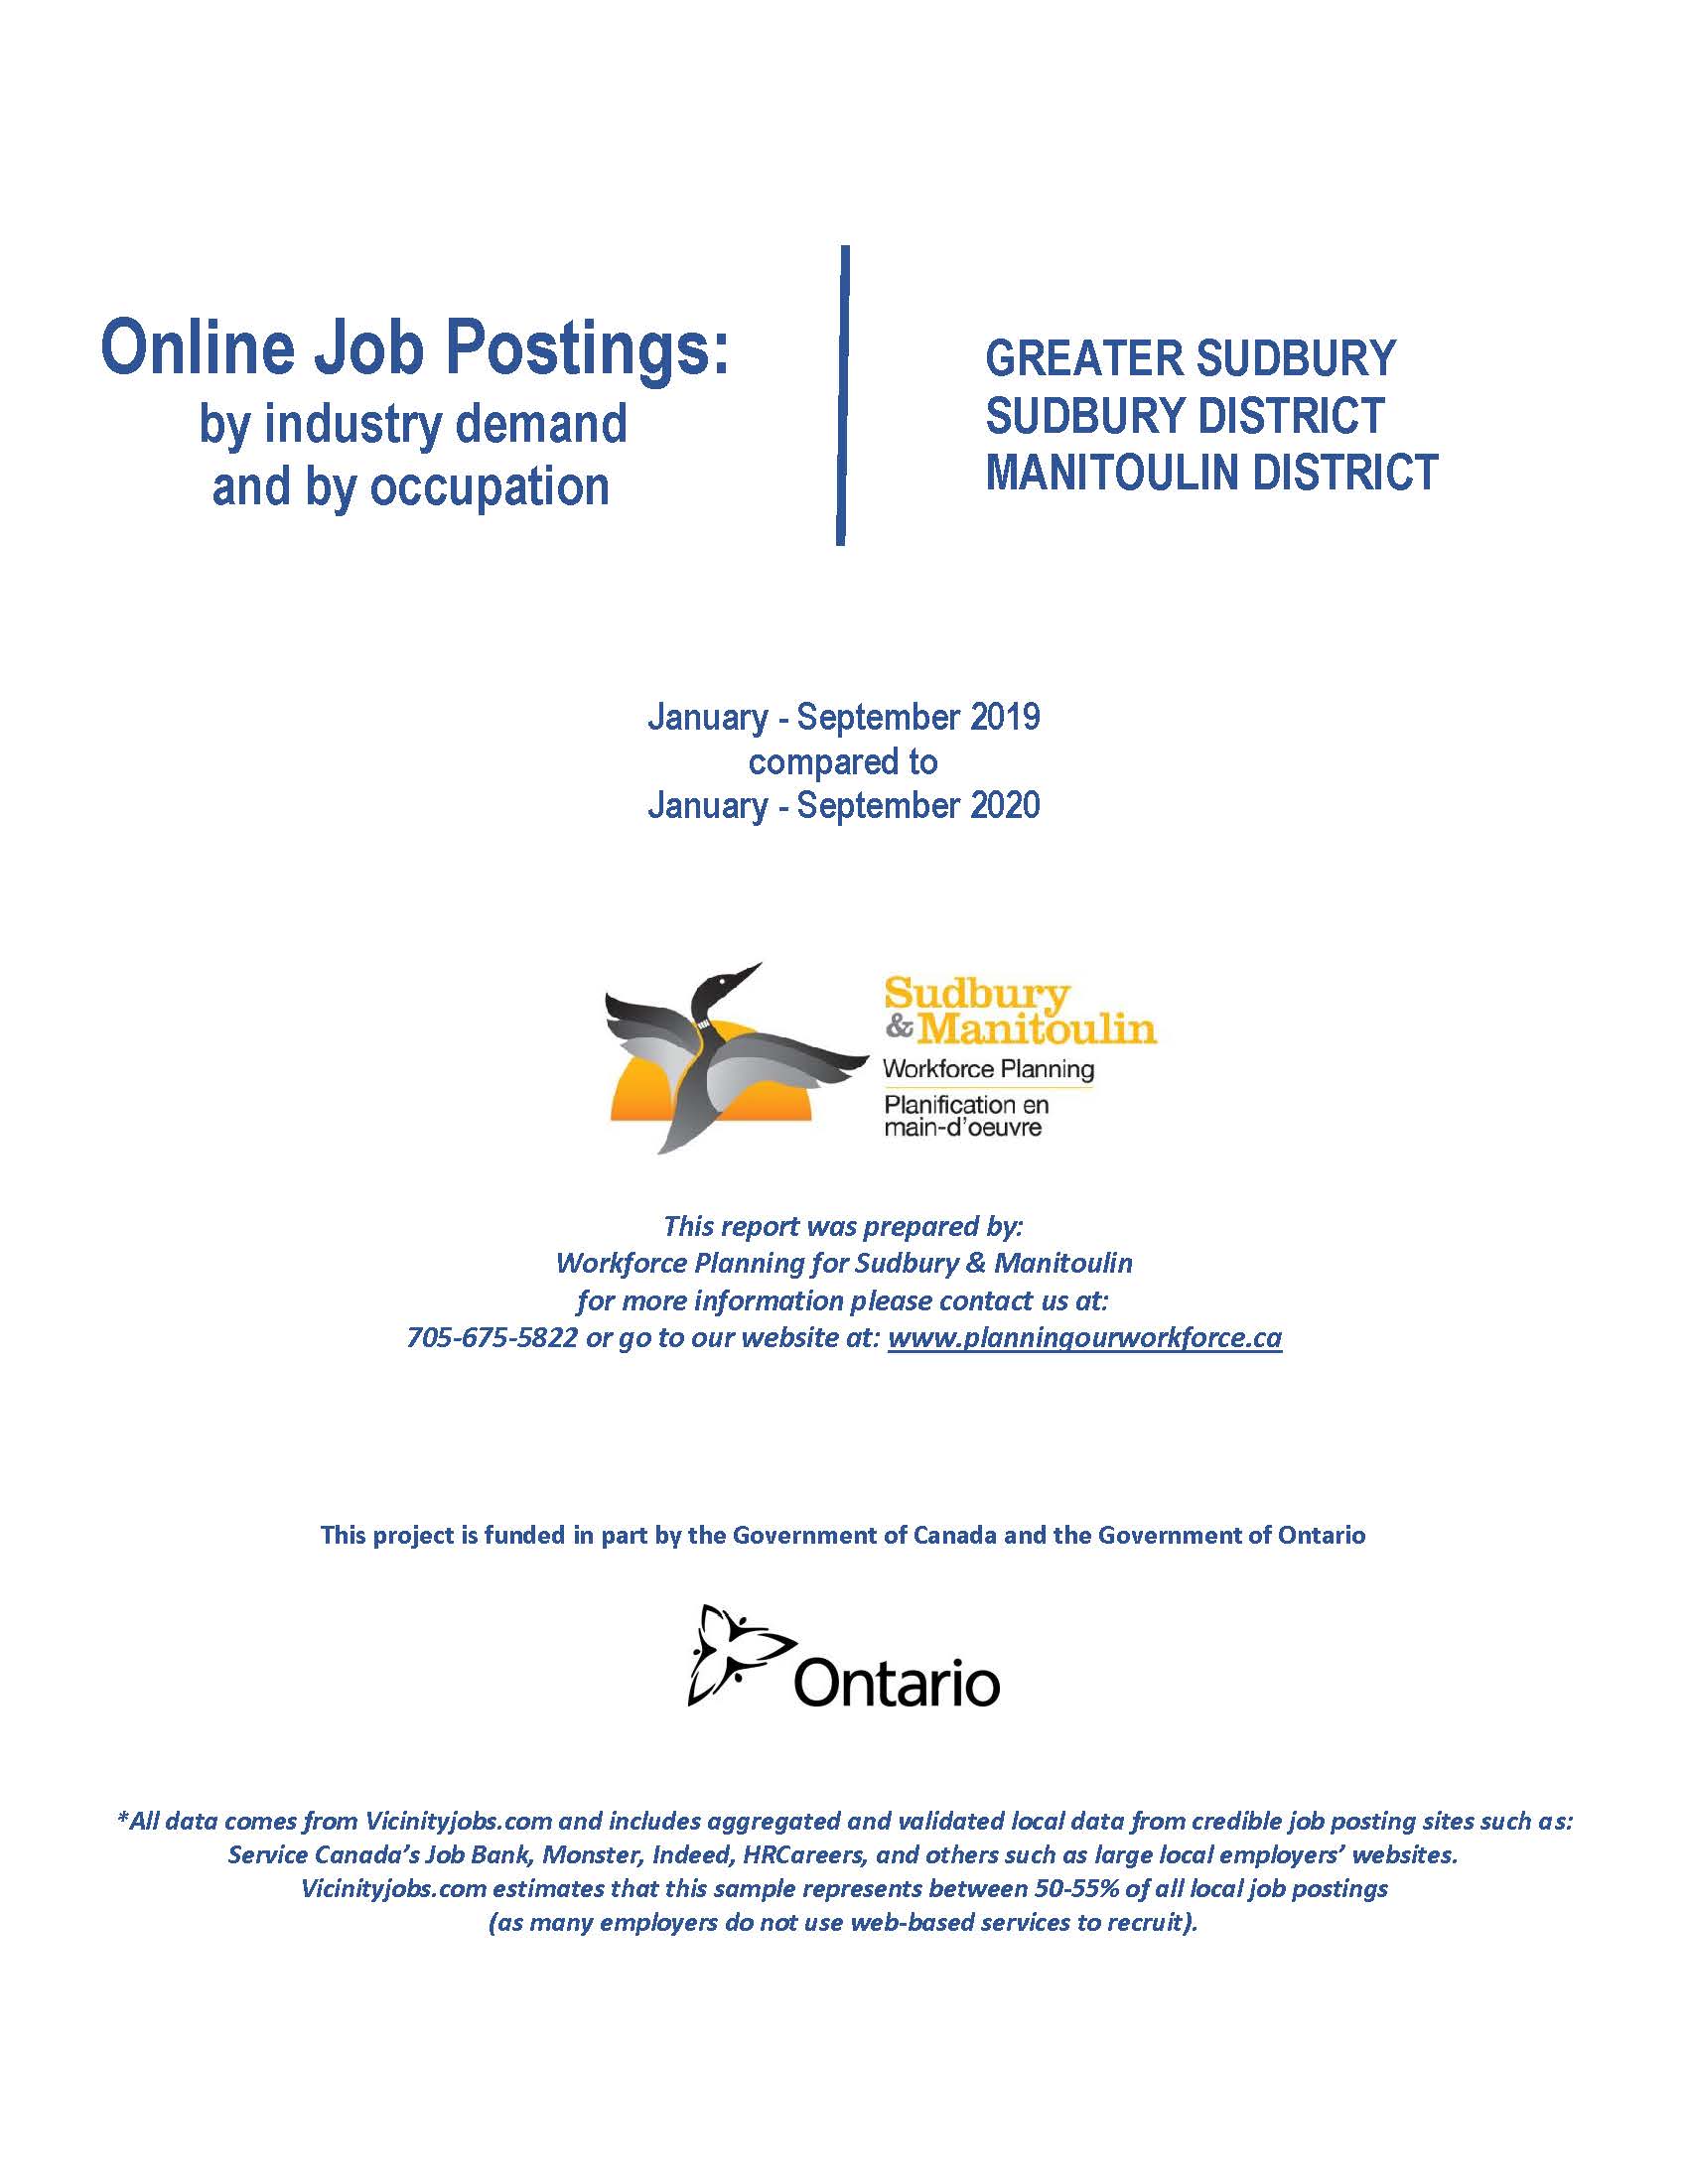 Rapport annuel sur les offres d'emplois en ligne